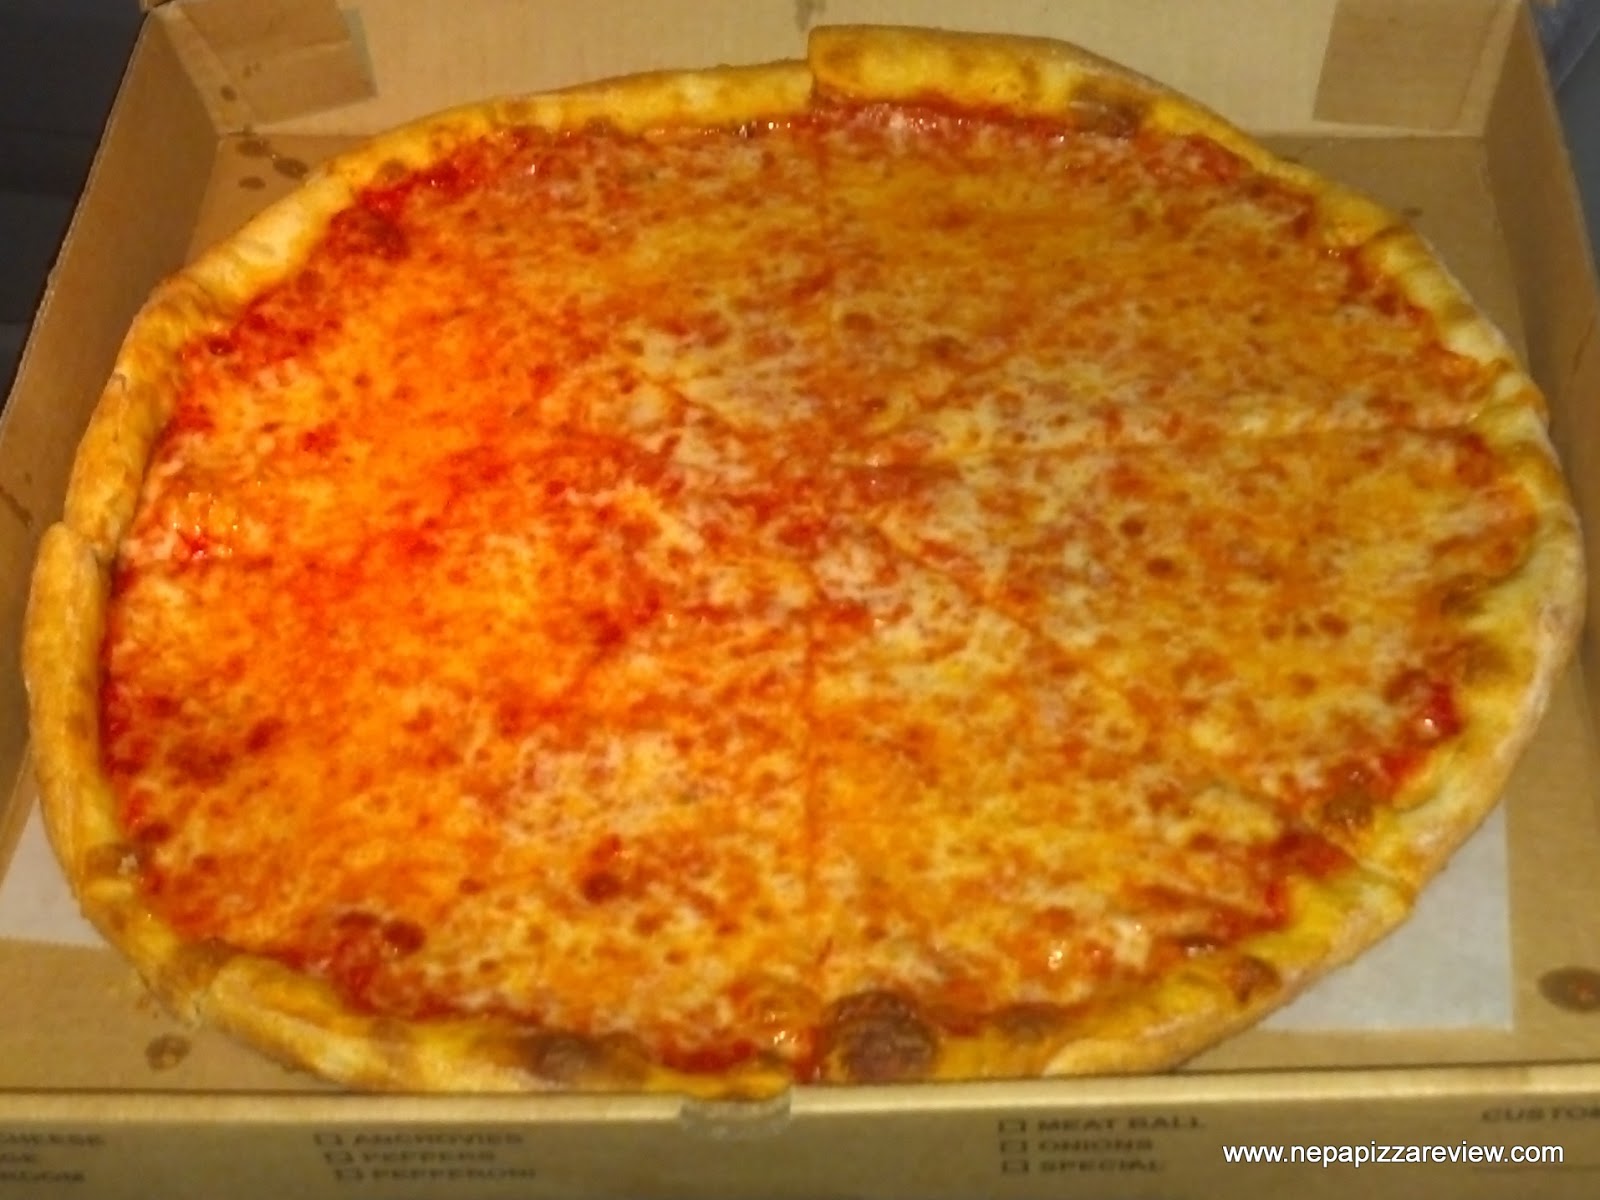 fiorillo's pizza